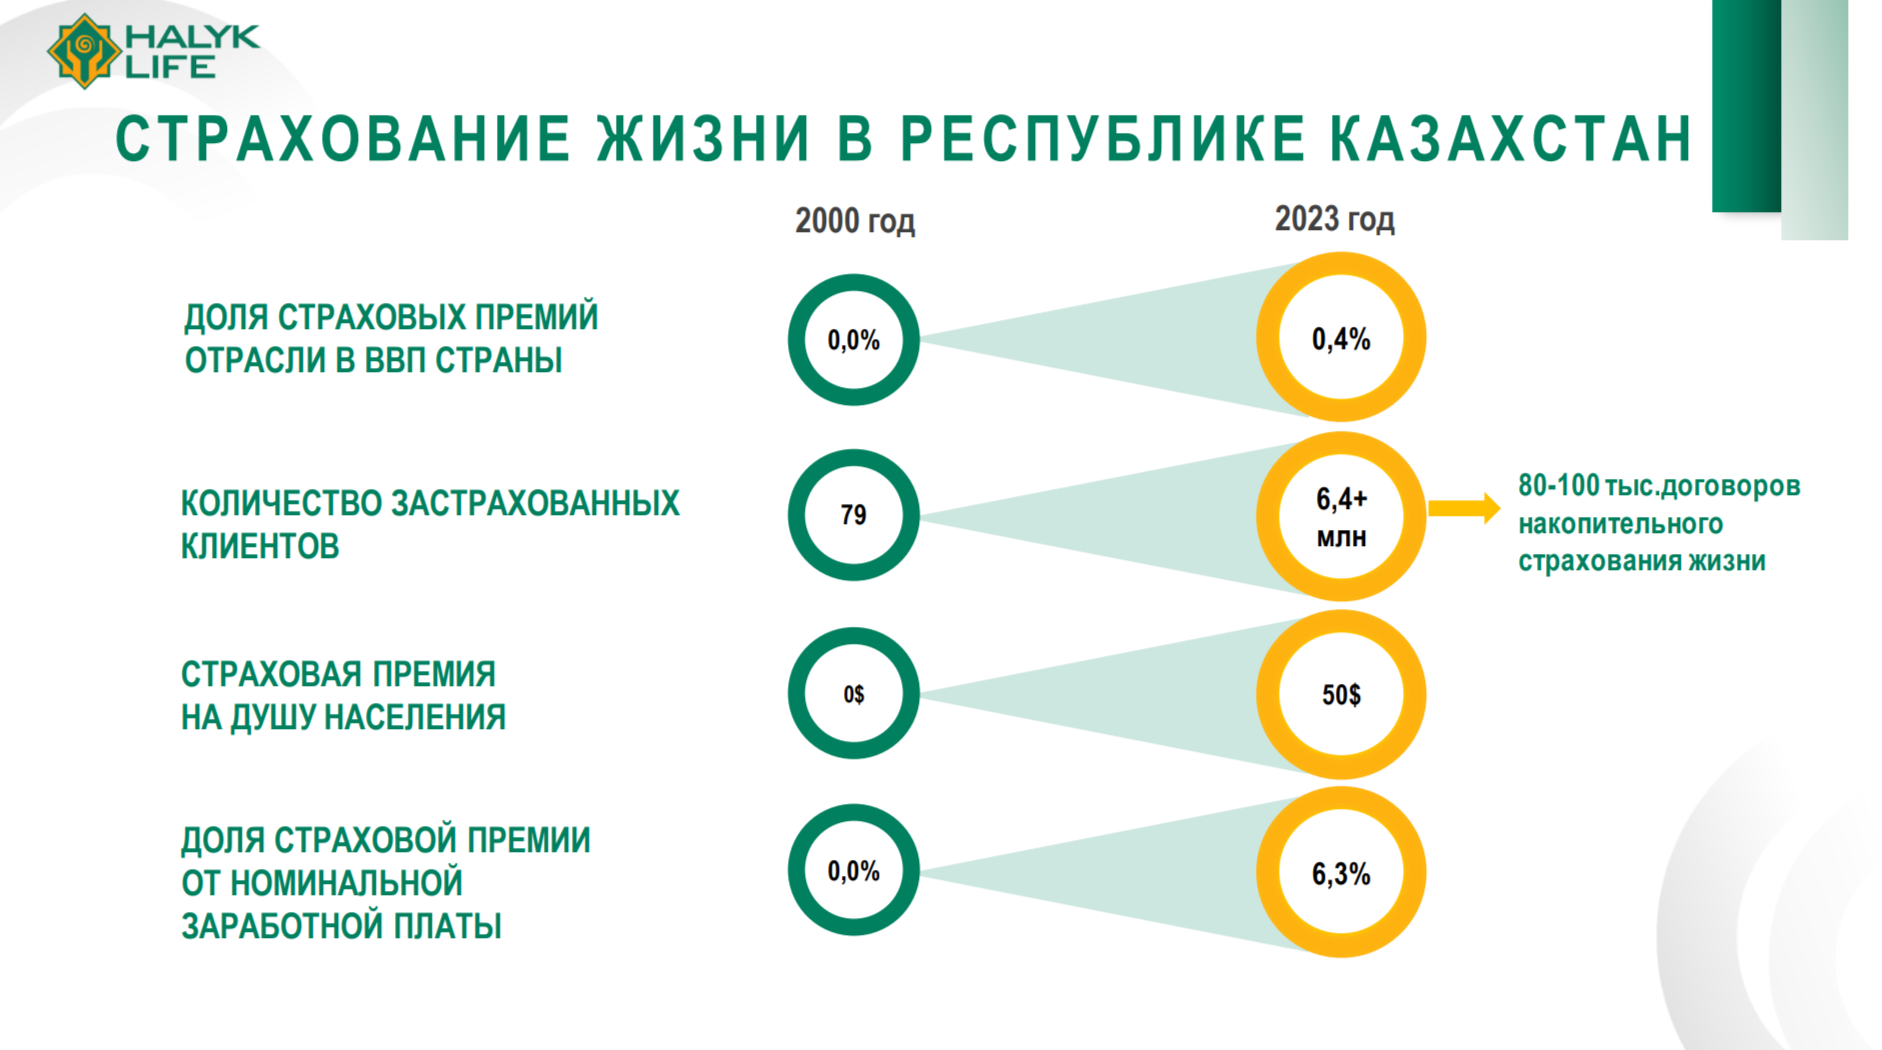 Что сдерживает развитие рынка страхования жизни в Казахстане 2959616 — Kapital.kz 